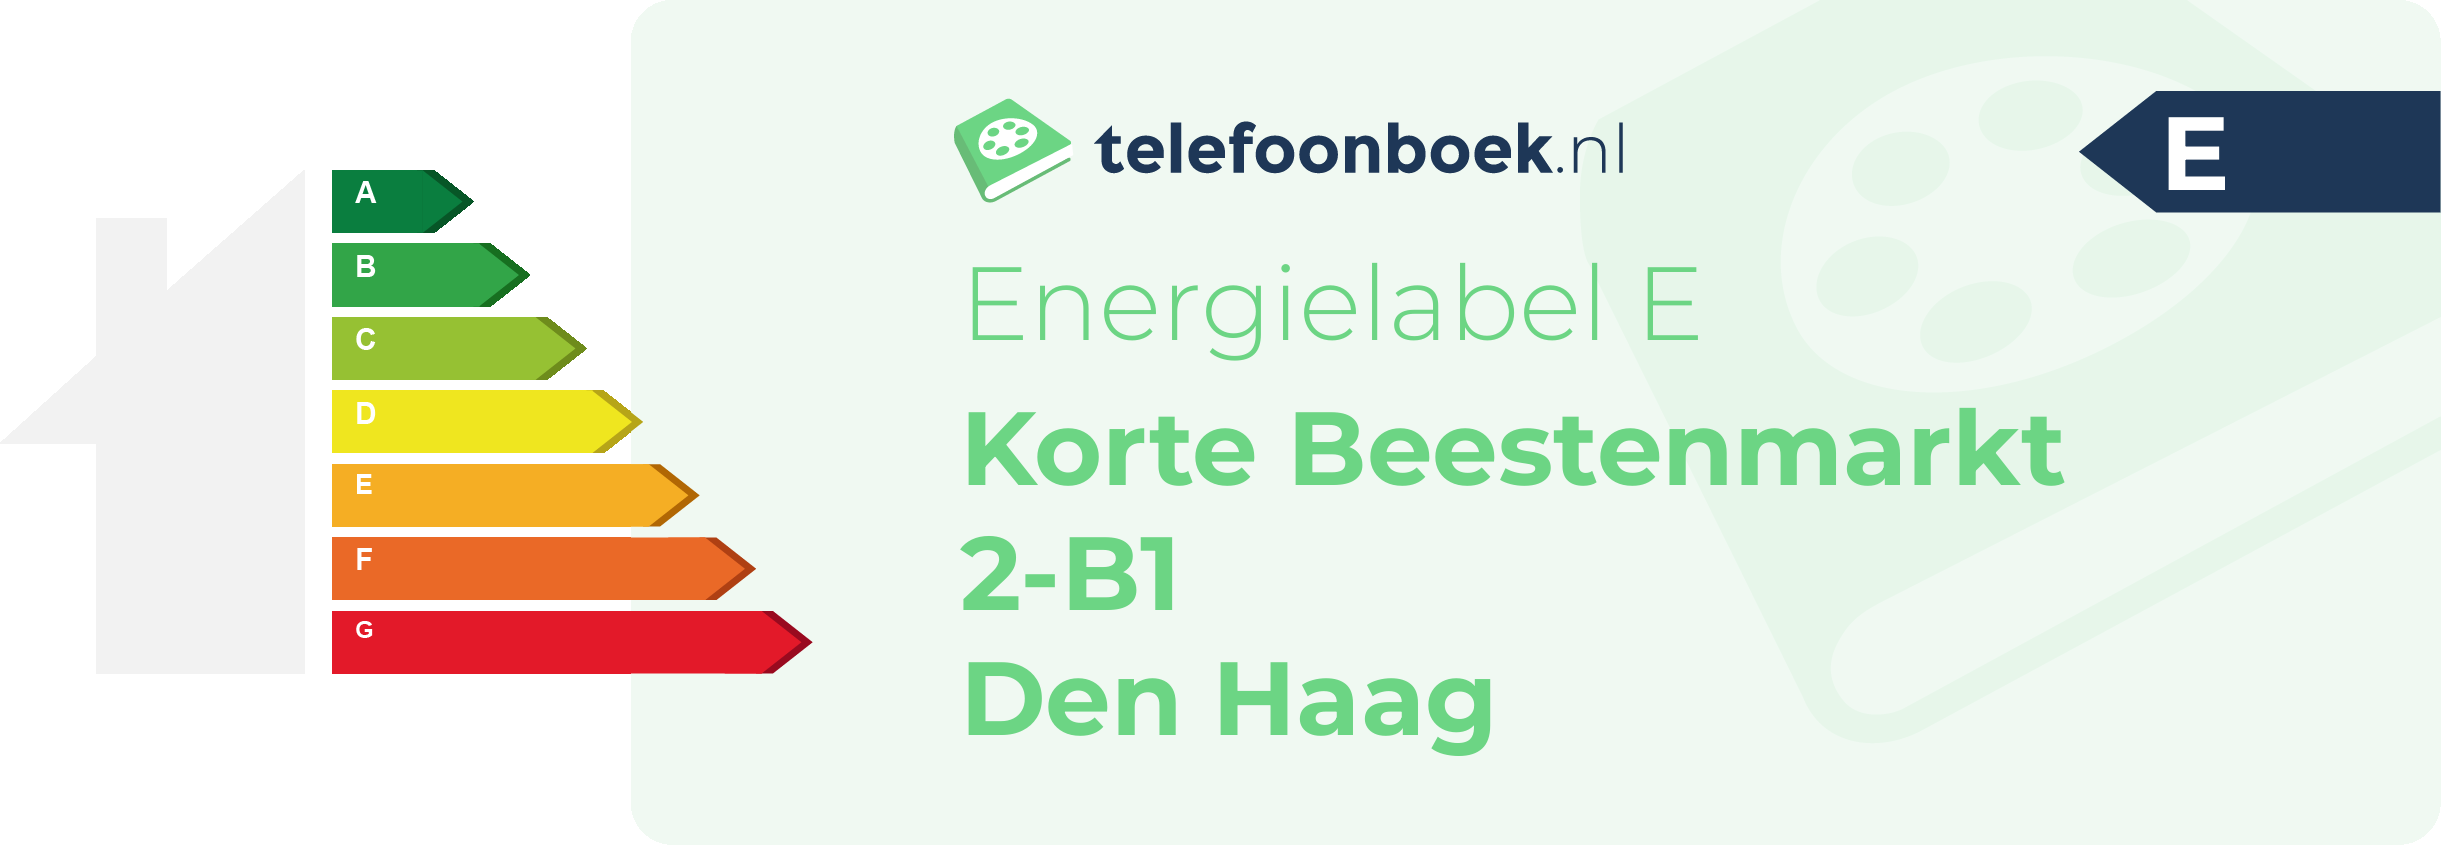 Energielabel Korte Beestenmarkt 2-B1 Den Haag